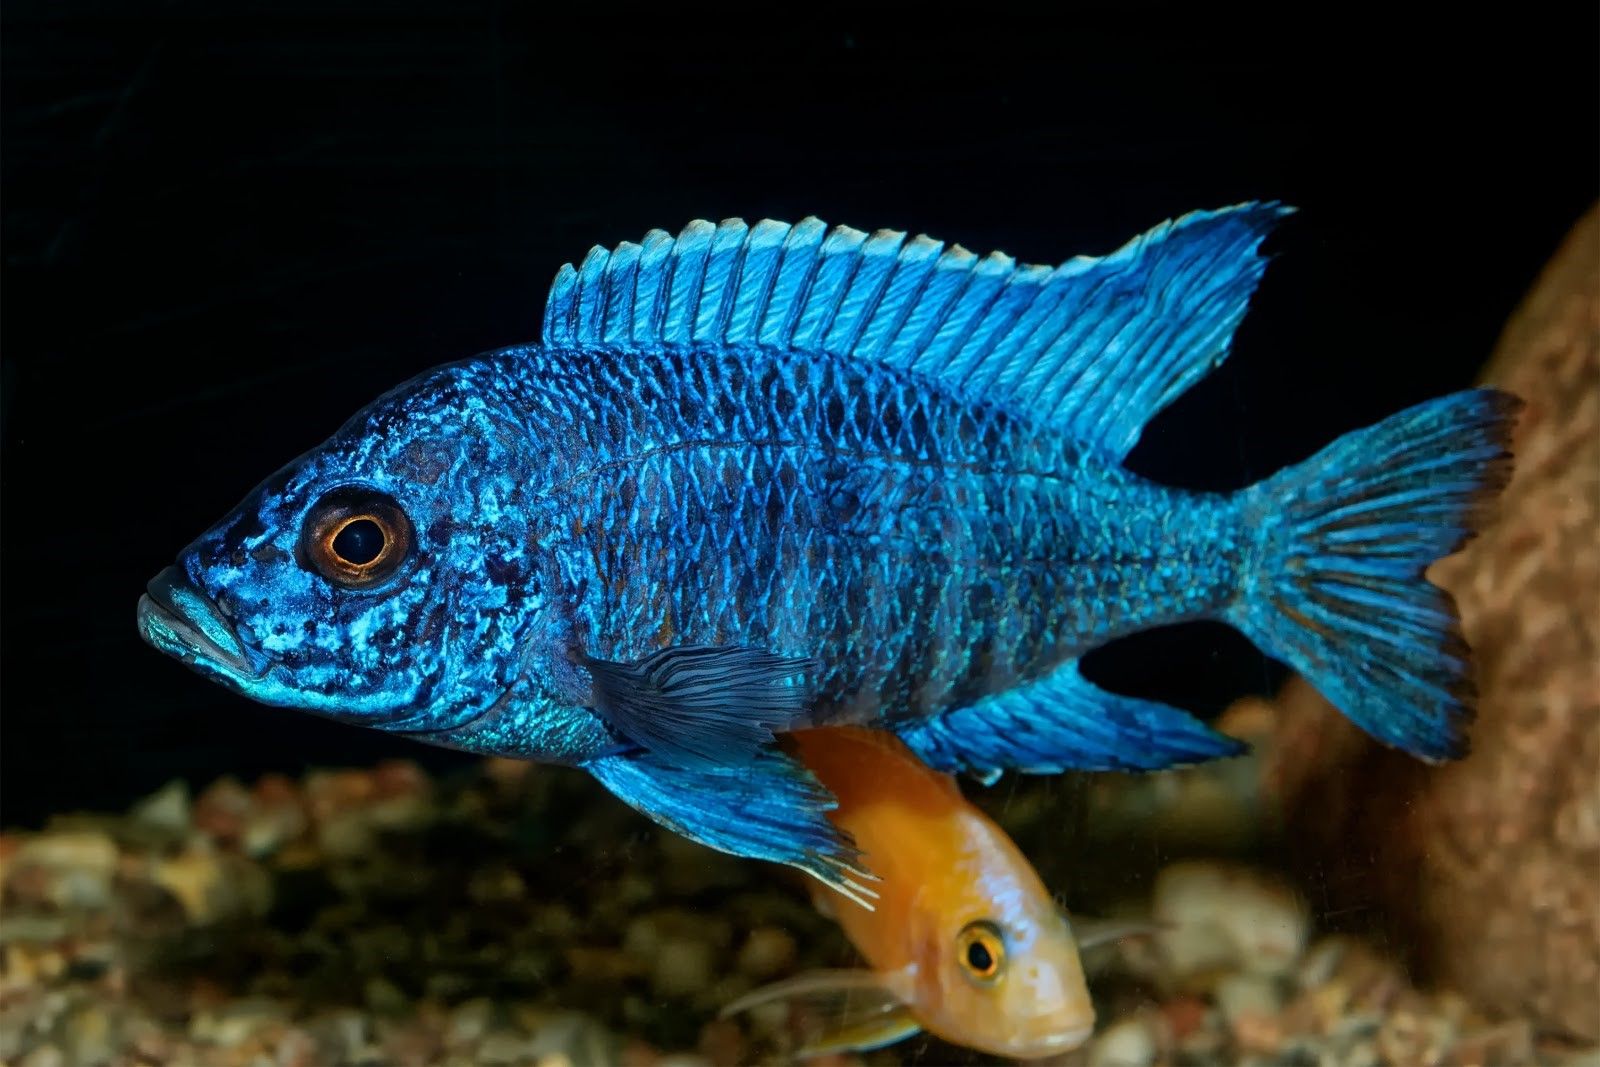 Peacock cichlid (Aulonocara nyassae) aquarium fish